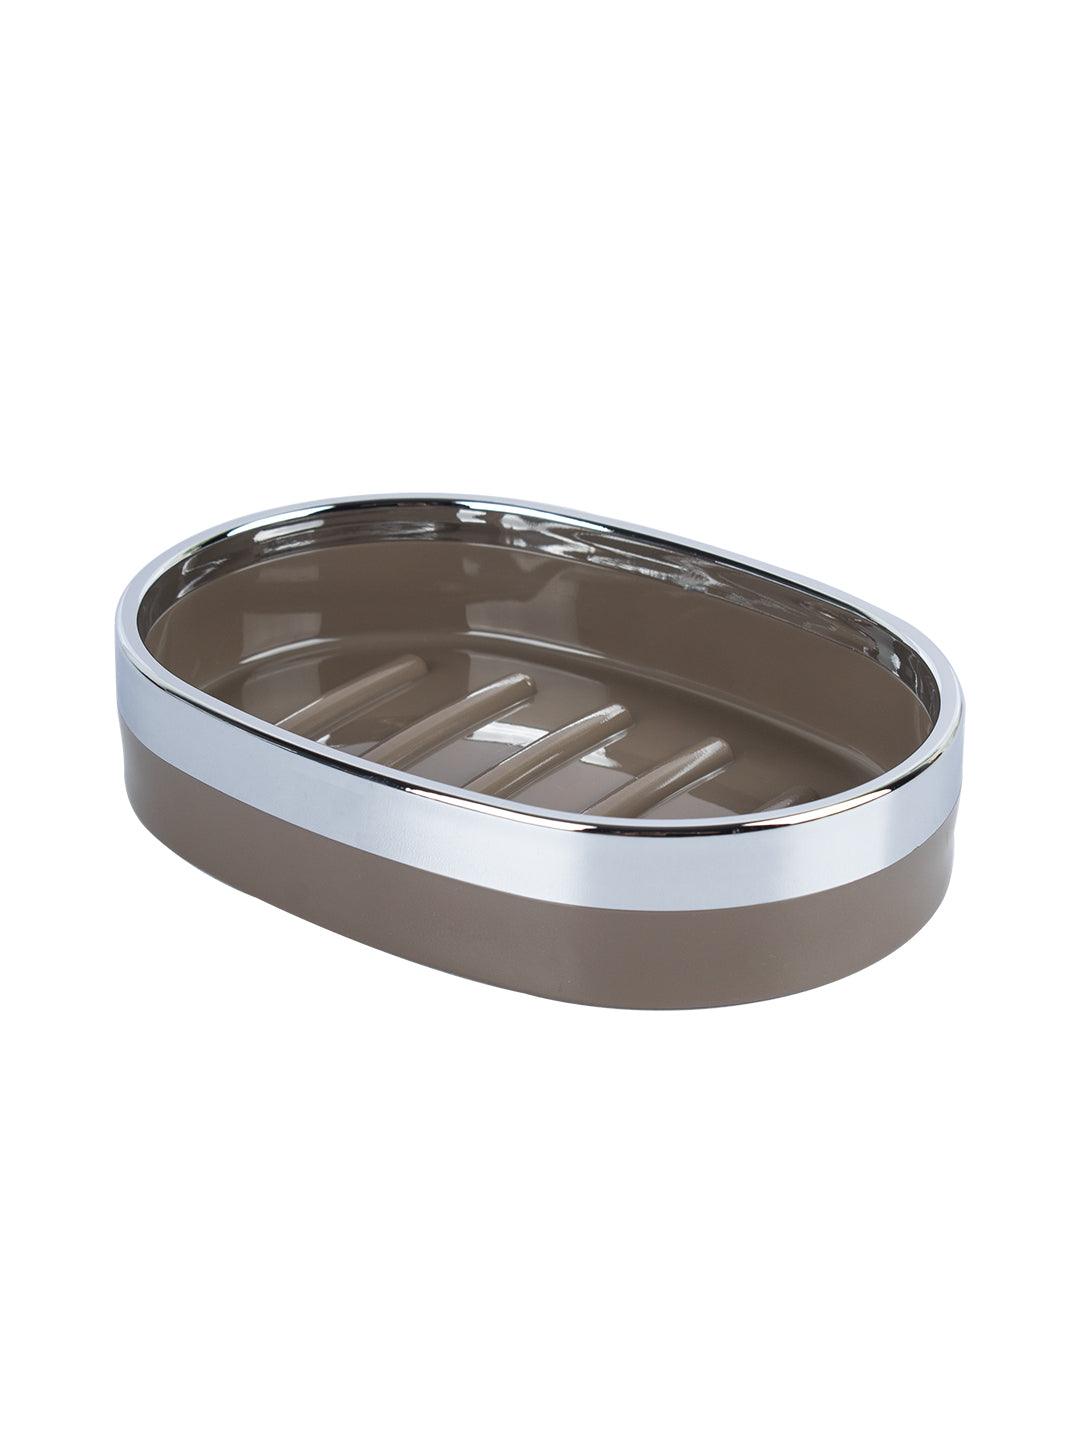 Market99 Soap Dish Holder, Silver & Brown Oval Shape Solid Soap Holder - MARKET 99